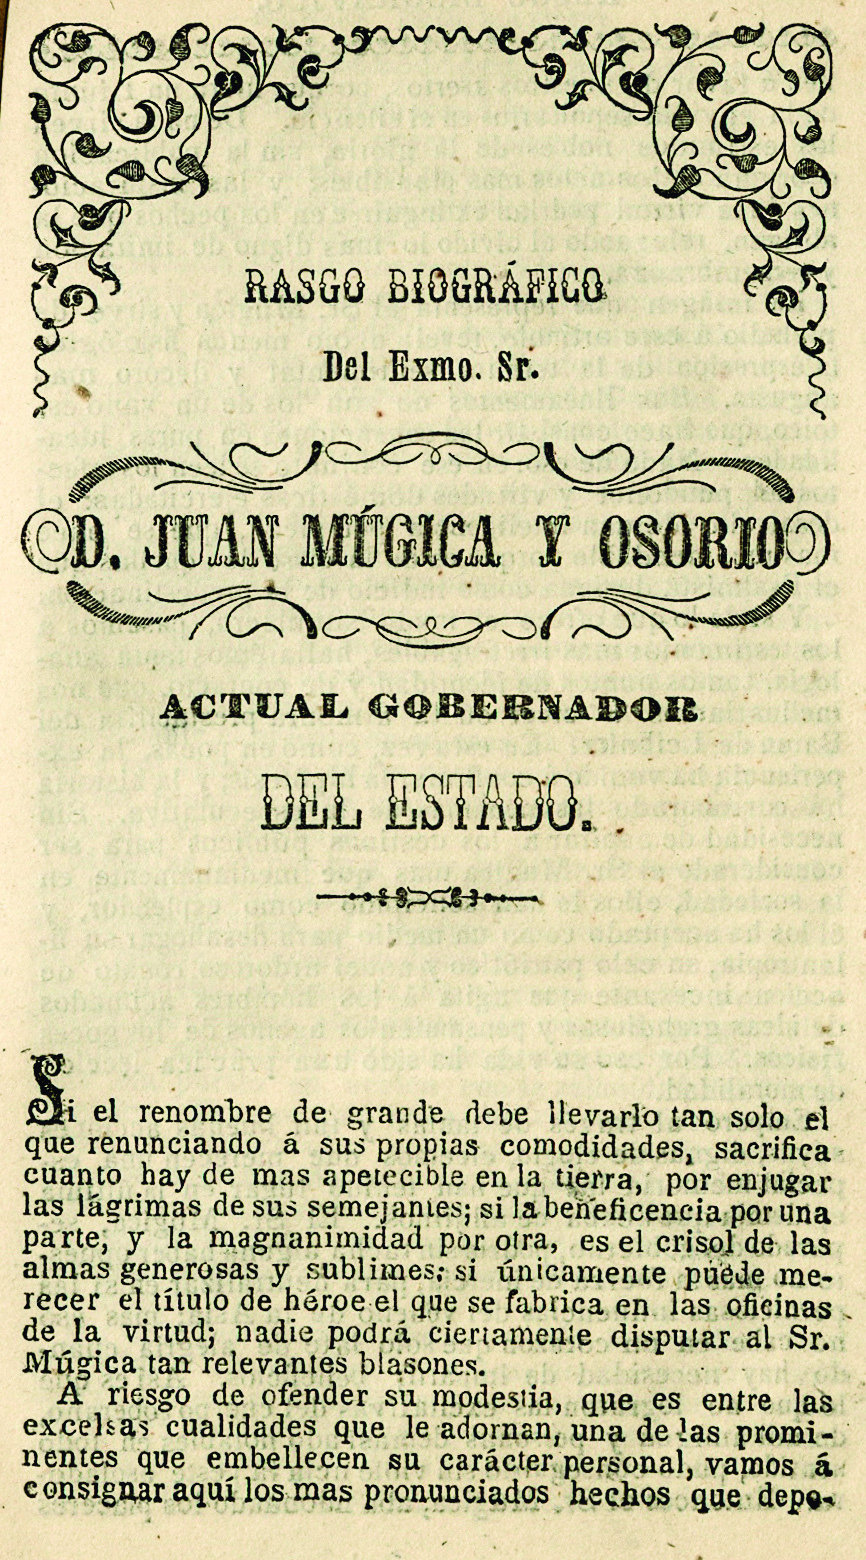 Calendario de José M. Macías, para 1851. Arreglado al meridiano de Puebla.